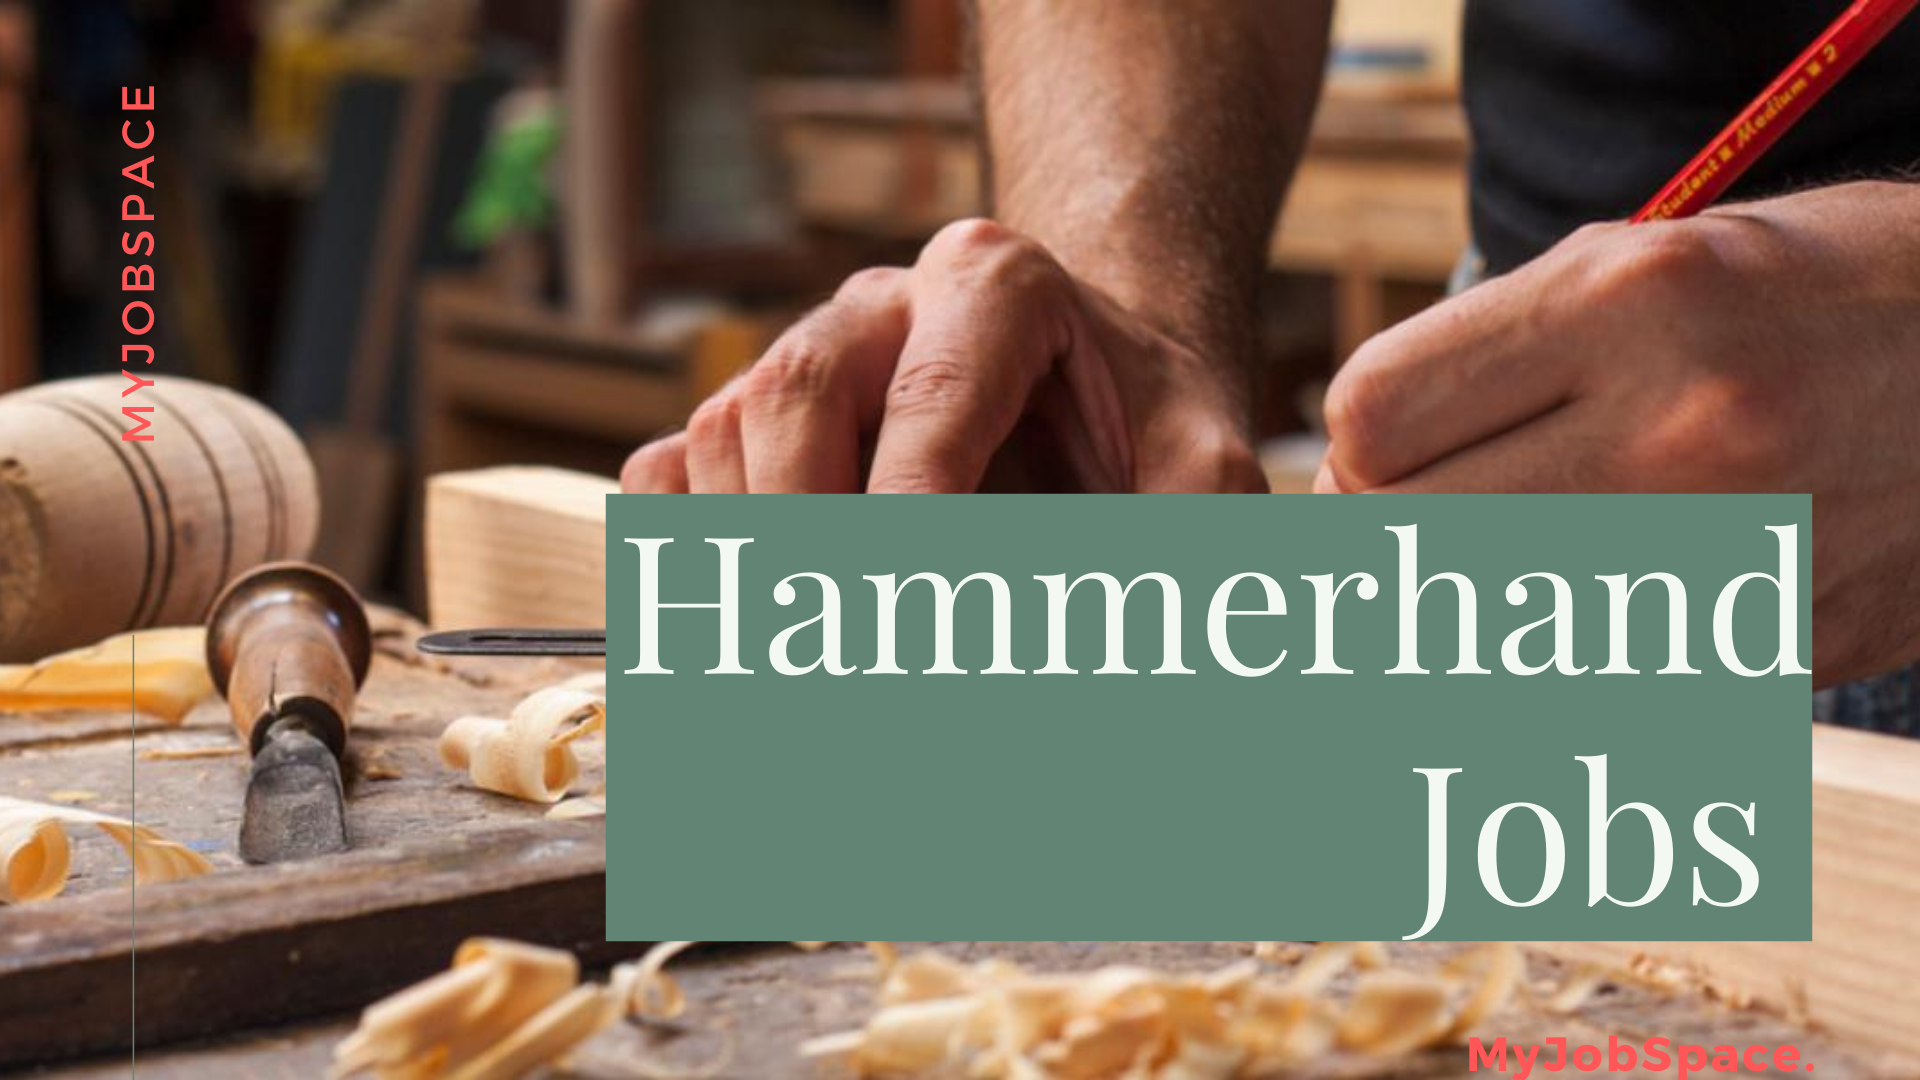 hammerhand jobs in New Zealand